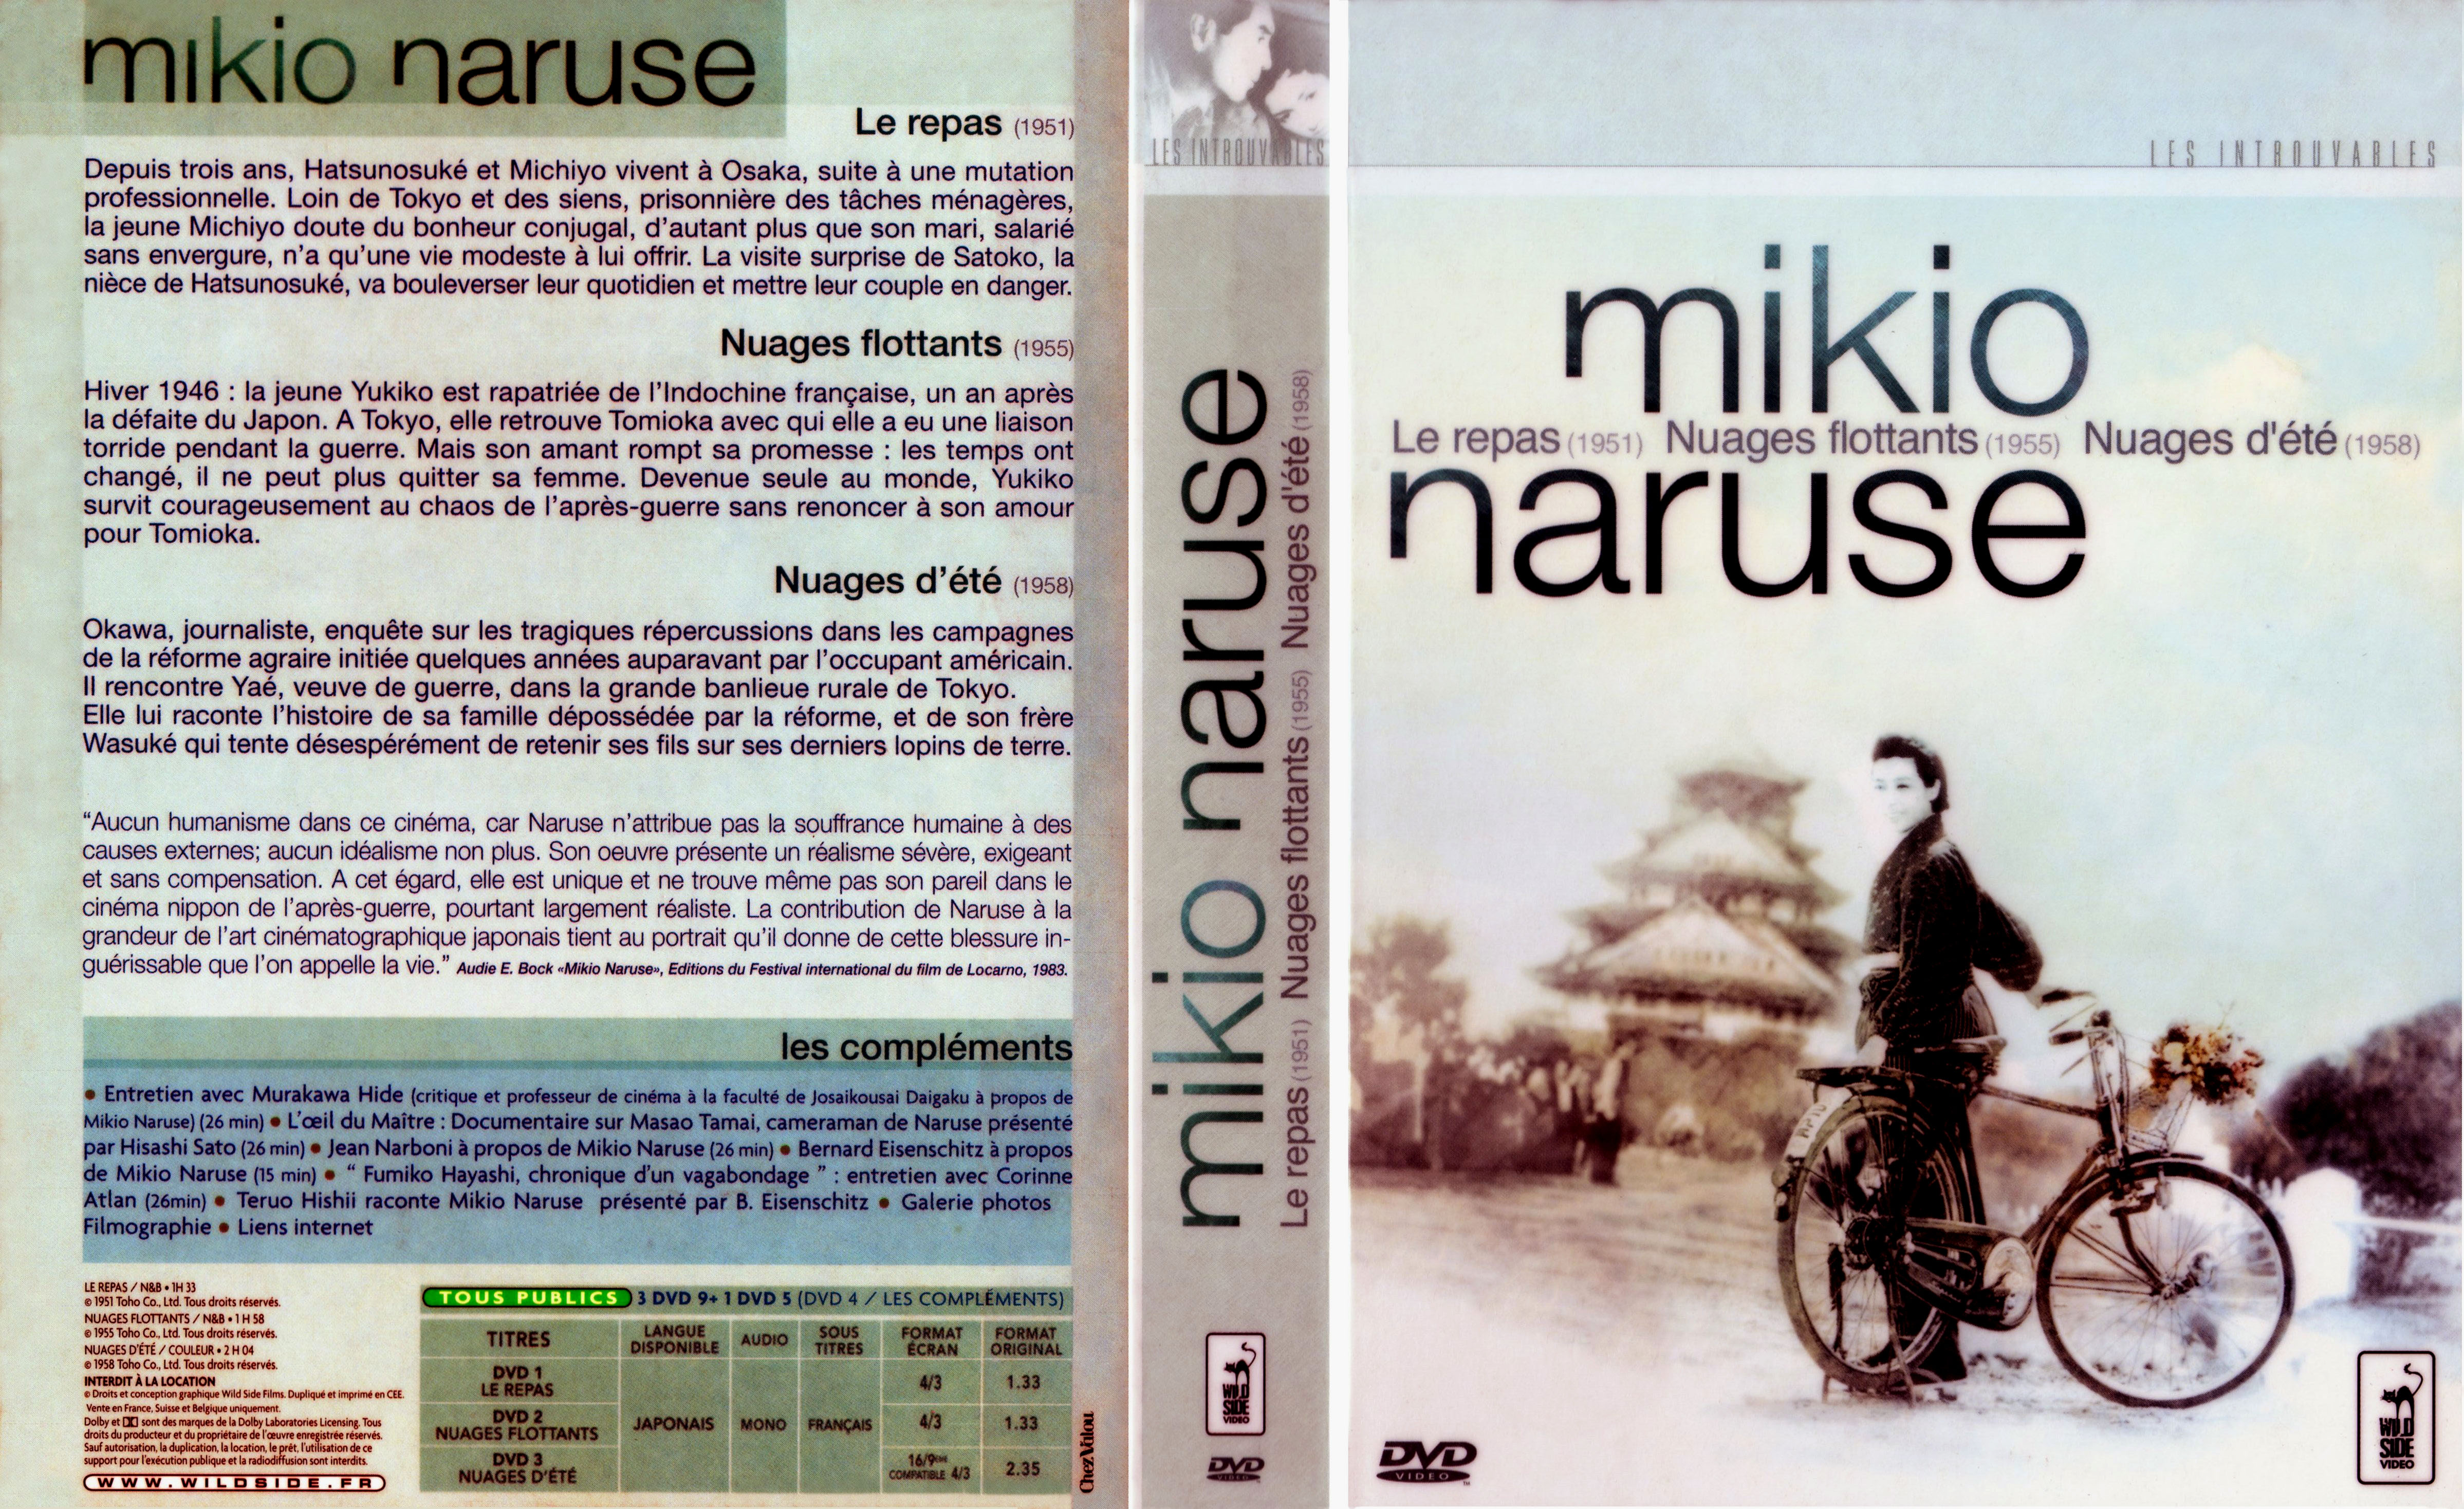 Jaquette DVD Mikio Naruse COFFRET